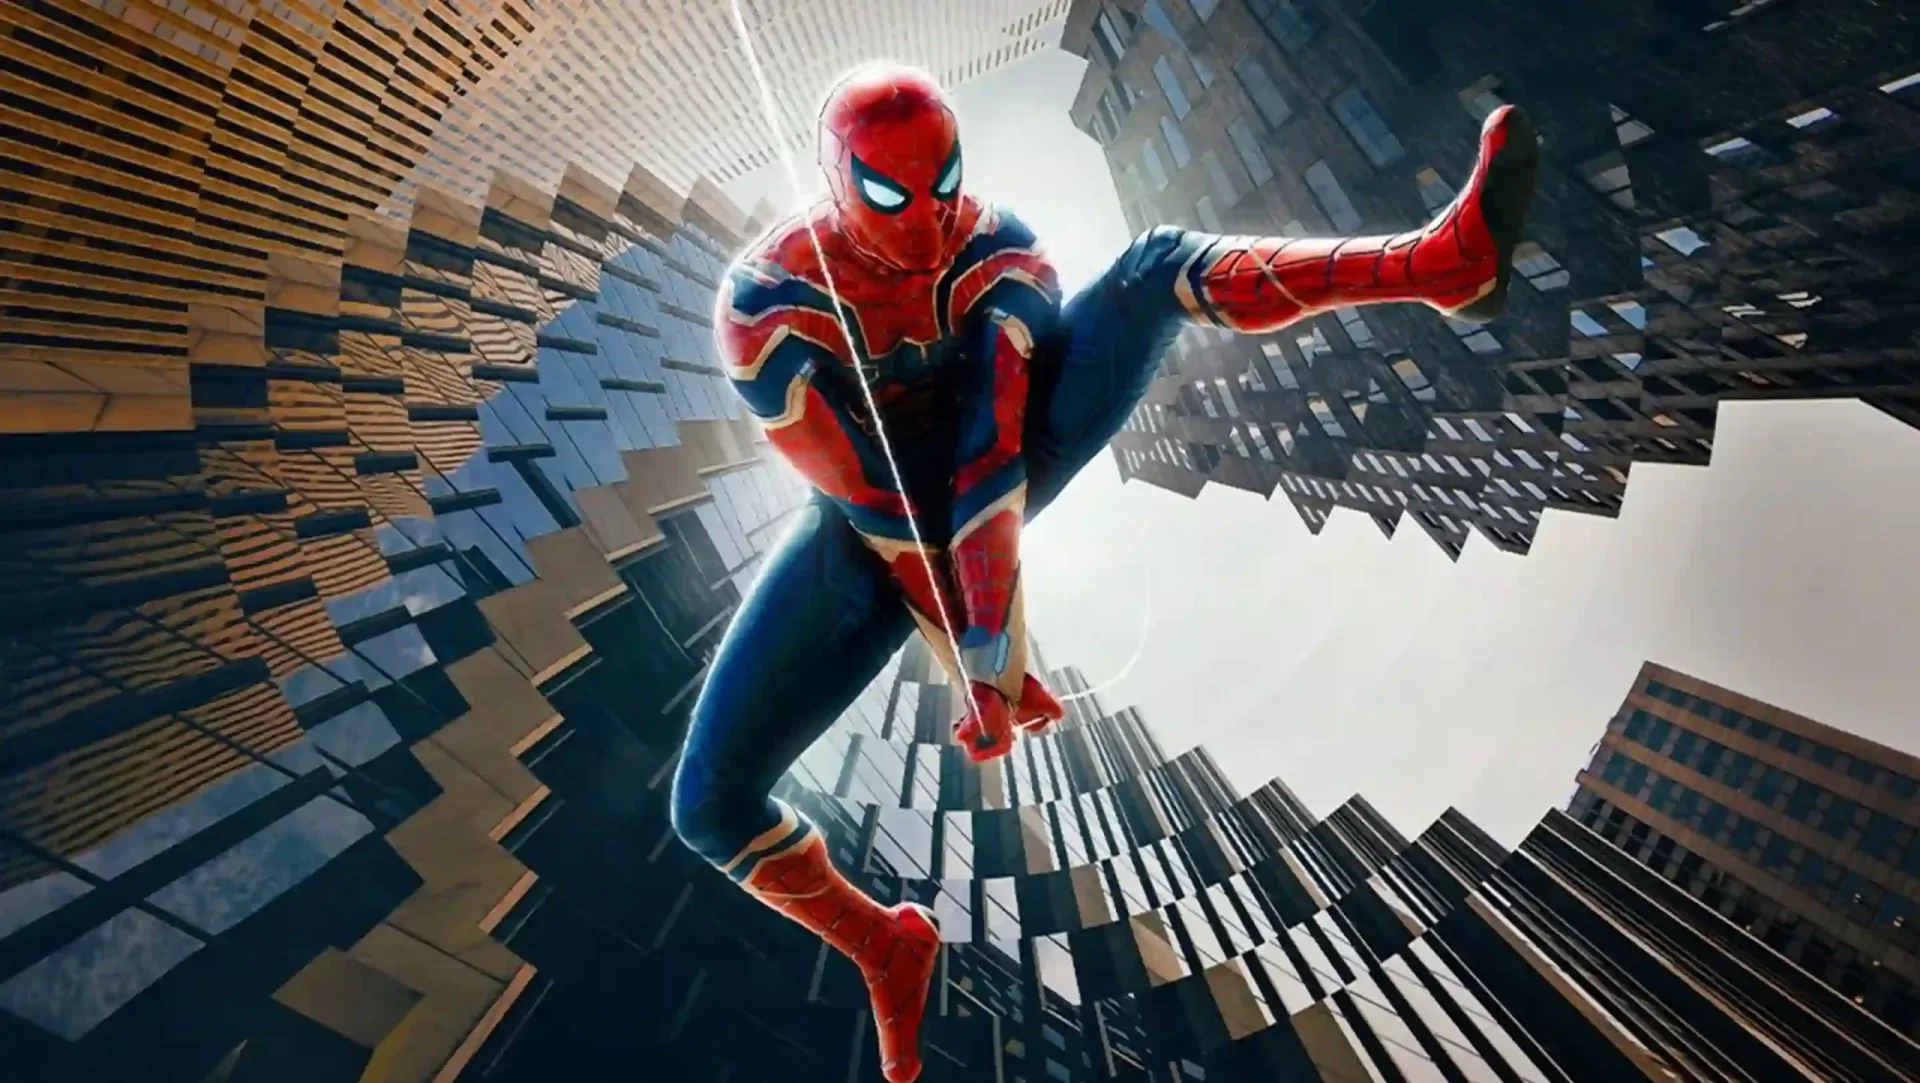 Spider-Man 3: No Way Home estrena el viernes 15 en streaming en Starz